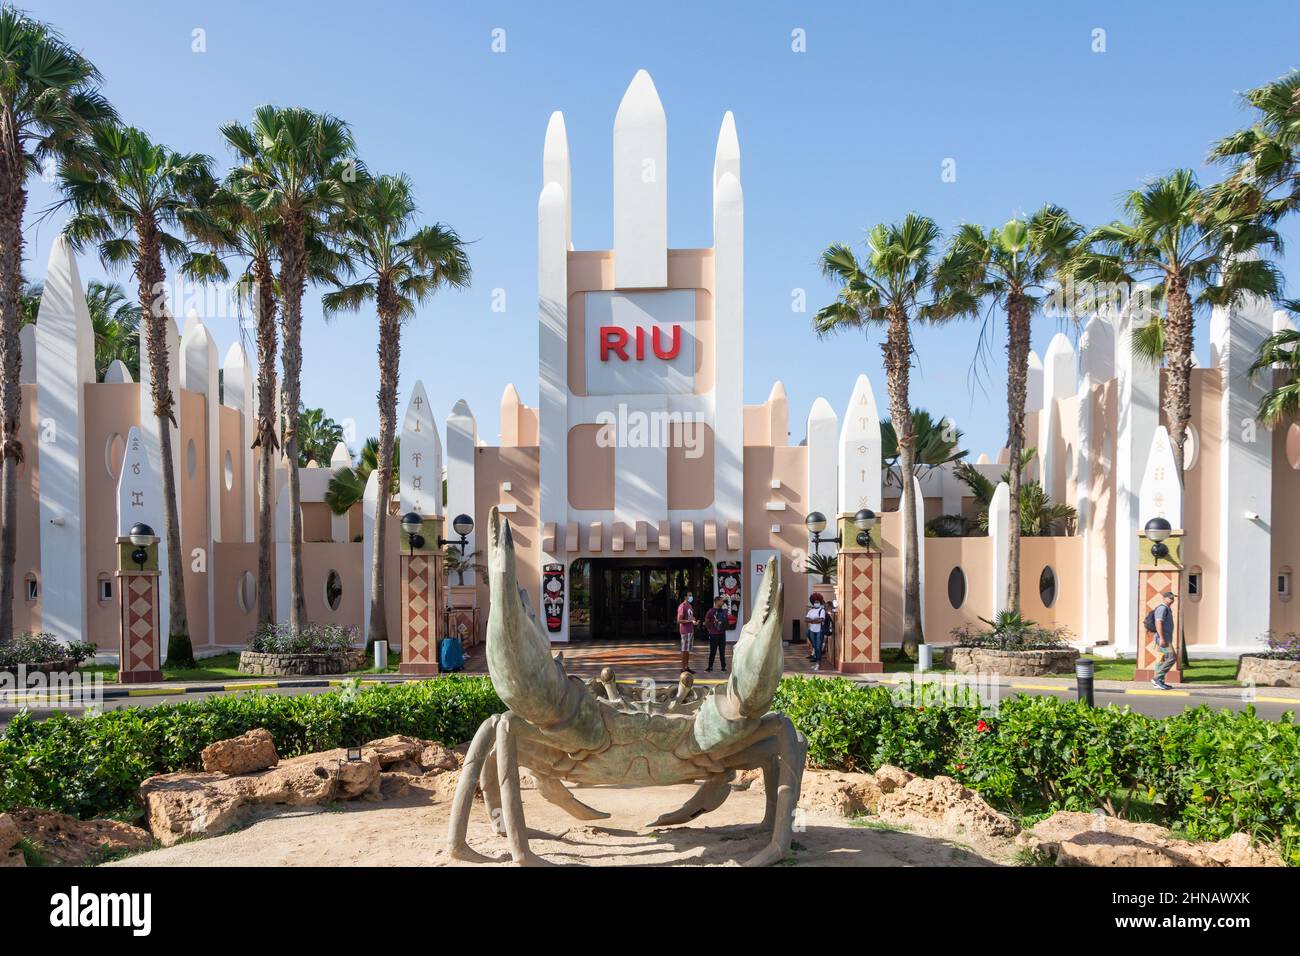 Ingresso al Rui Funana Hotel, Santa Maria, SAL, República de Cabo (Capo Verde) Foto Stock